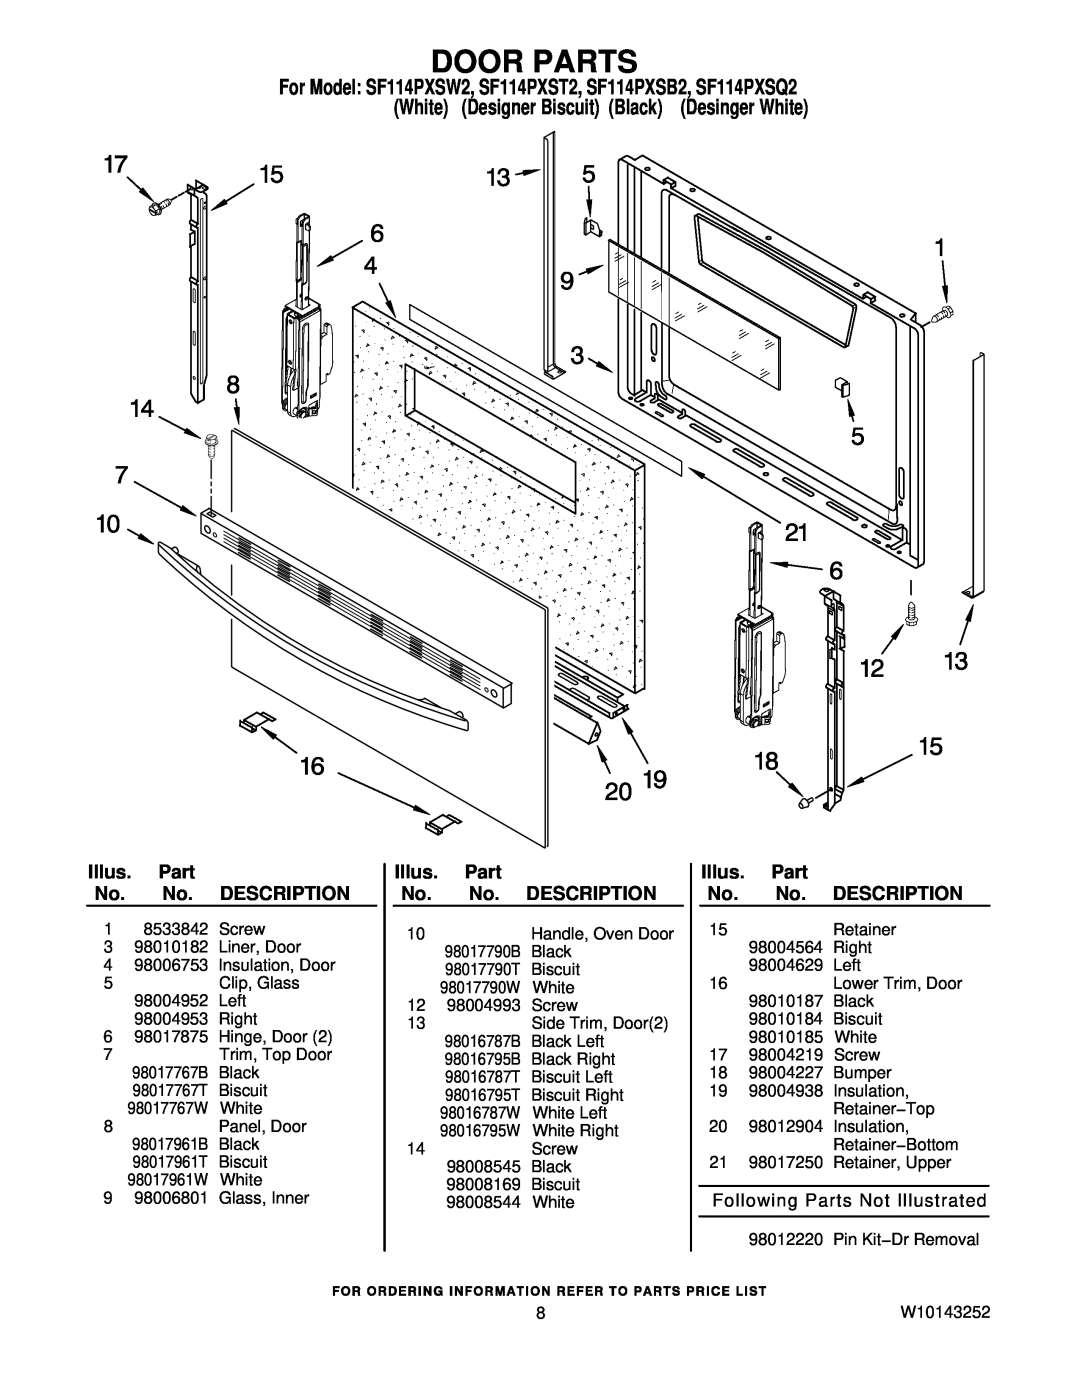 Whirlpool SF114PXSW2 Door Parts, Following Parts Not Illustrated, Handle, Oven Door, Black, Biscuit, White, Description 